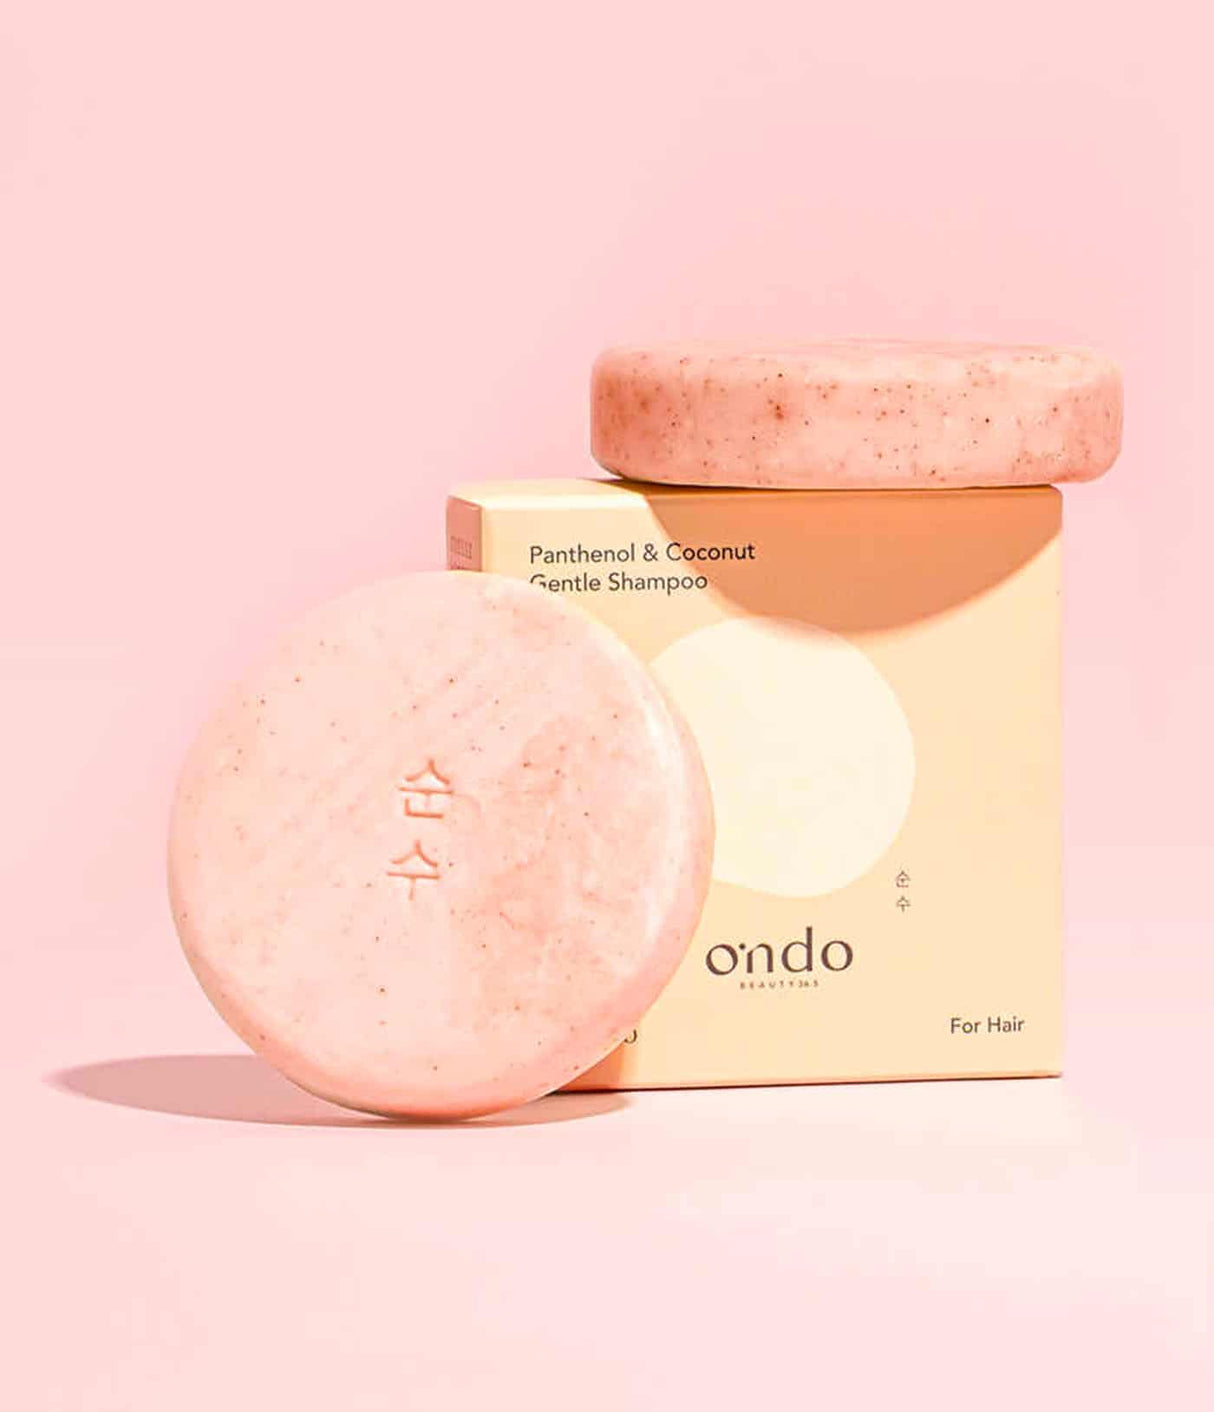 Panthenol & Coconut Gentle Shampoo de Ondo Beauty 36.5